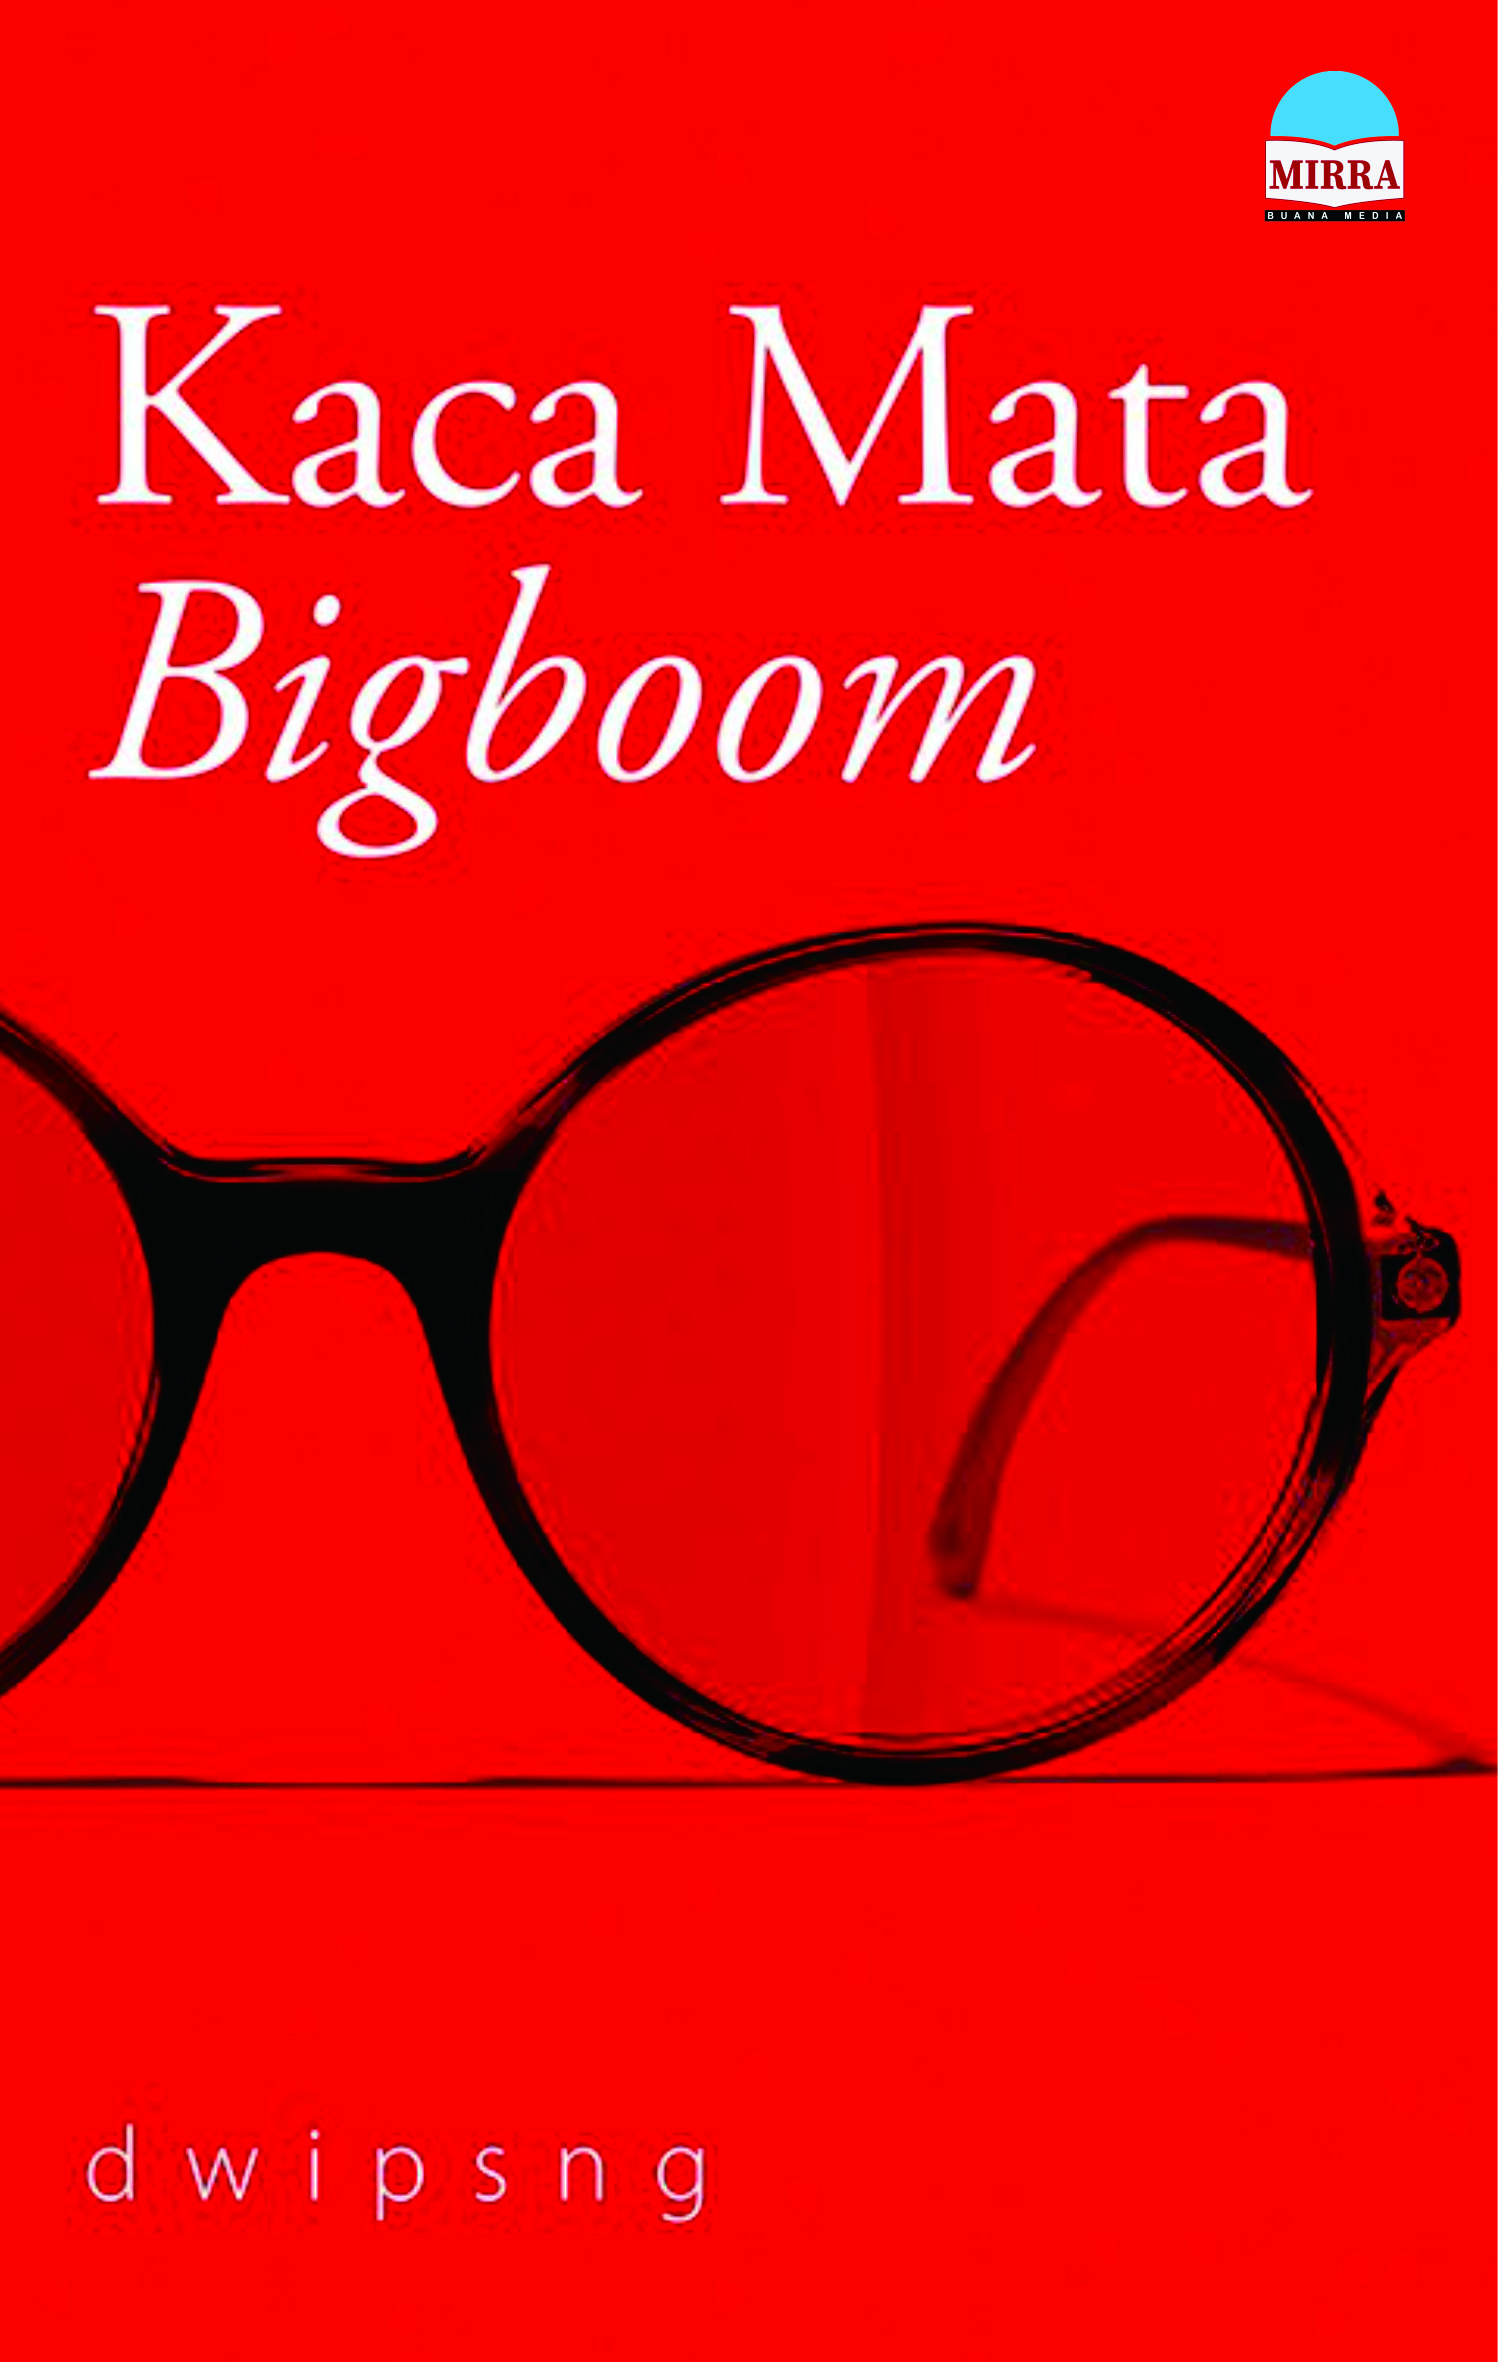 cover/(25-01-2023)kaca-mata-bigboom.jpg